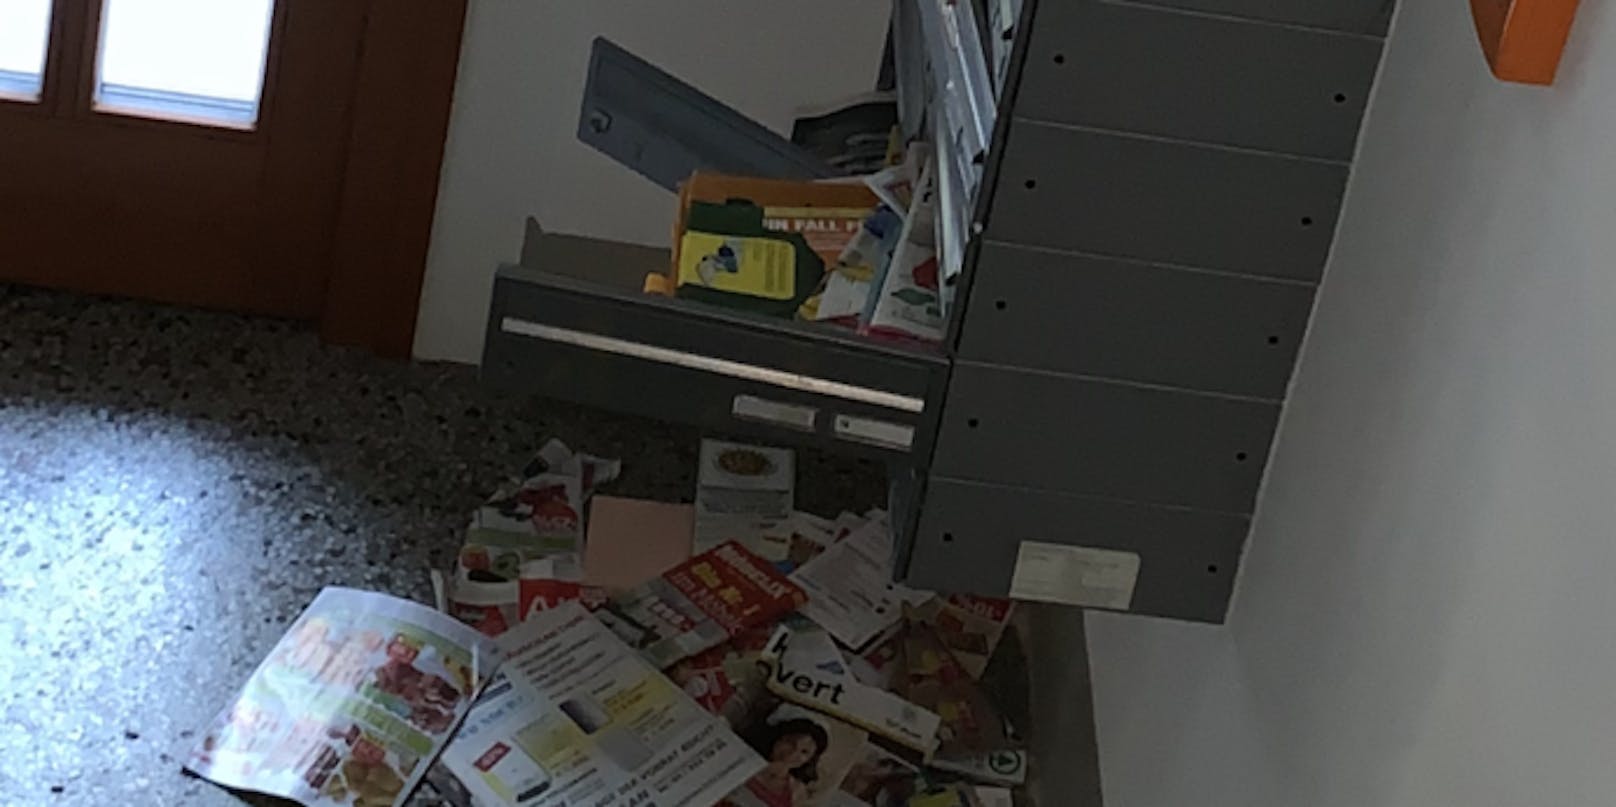 Postkästen werden gewaltsam aufgebrochen und nach den Gastro-Gutscheinen durchsucht.